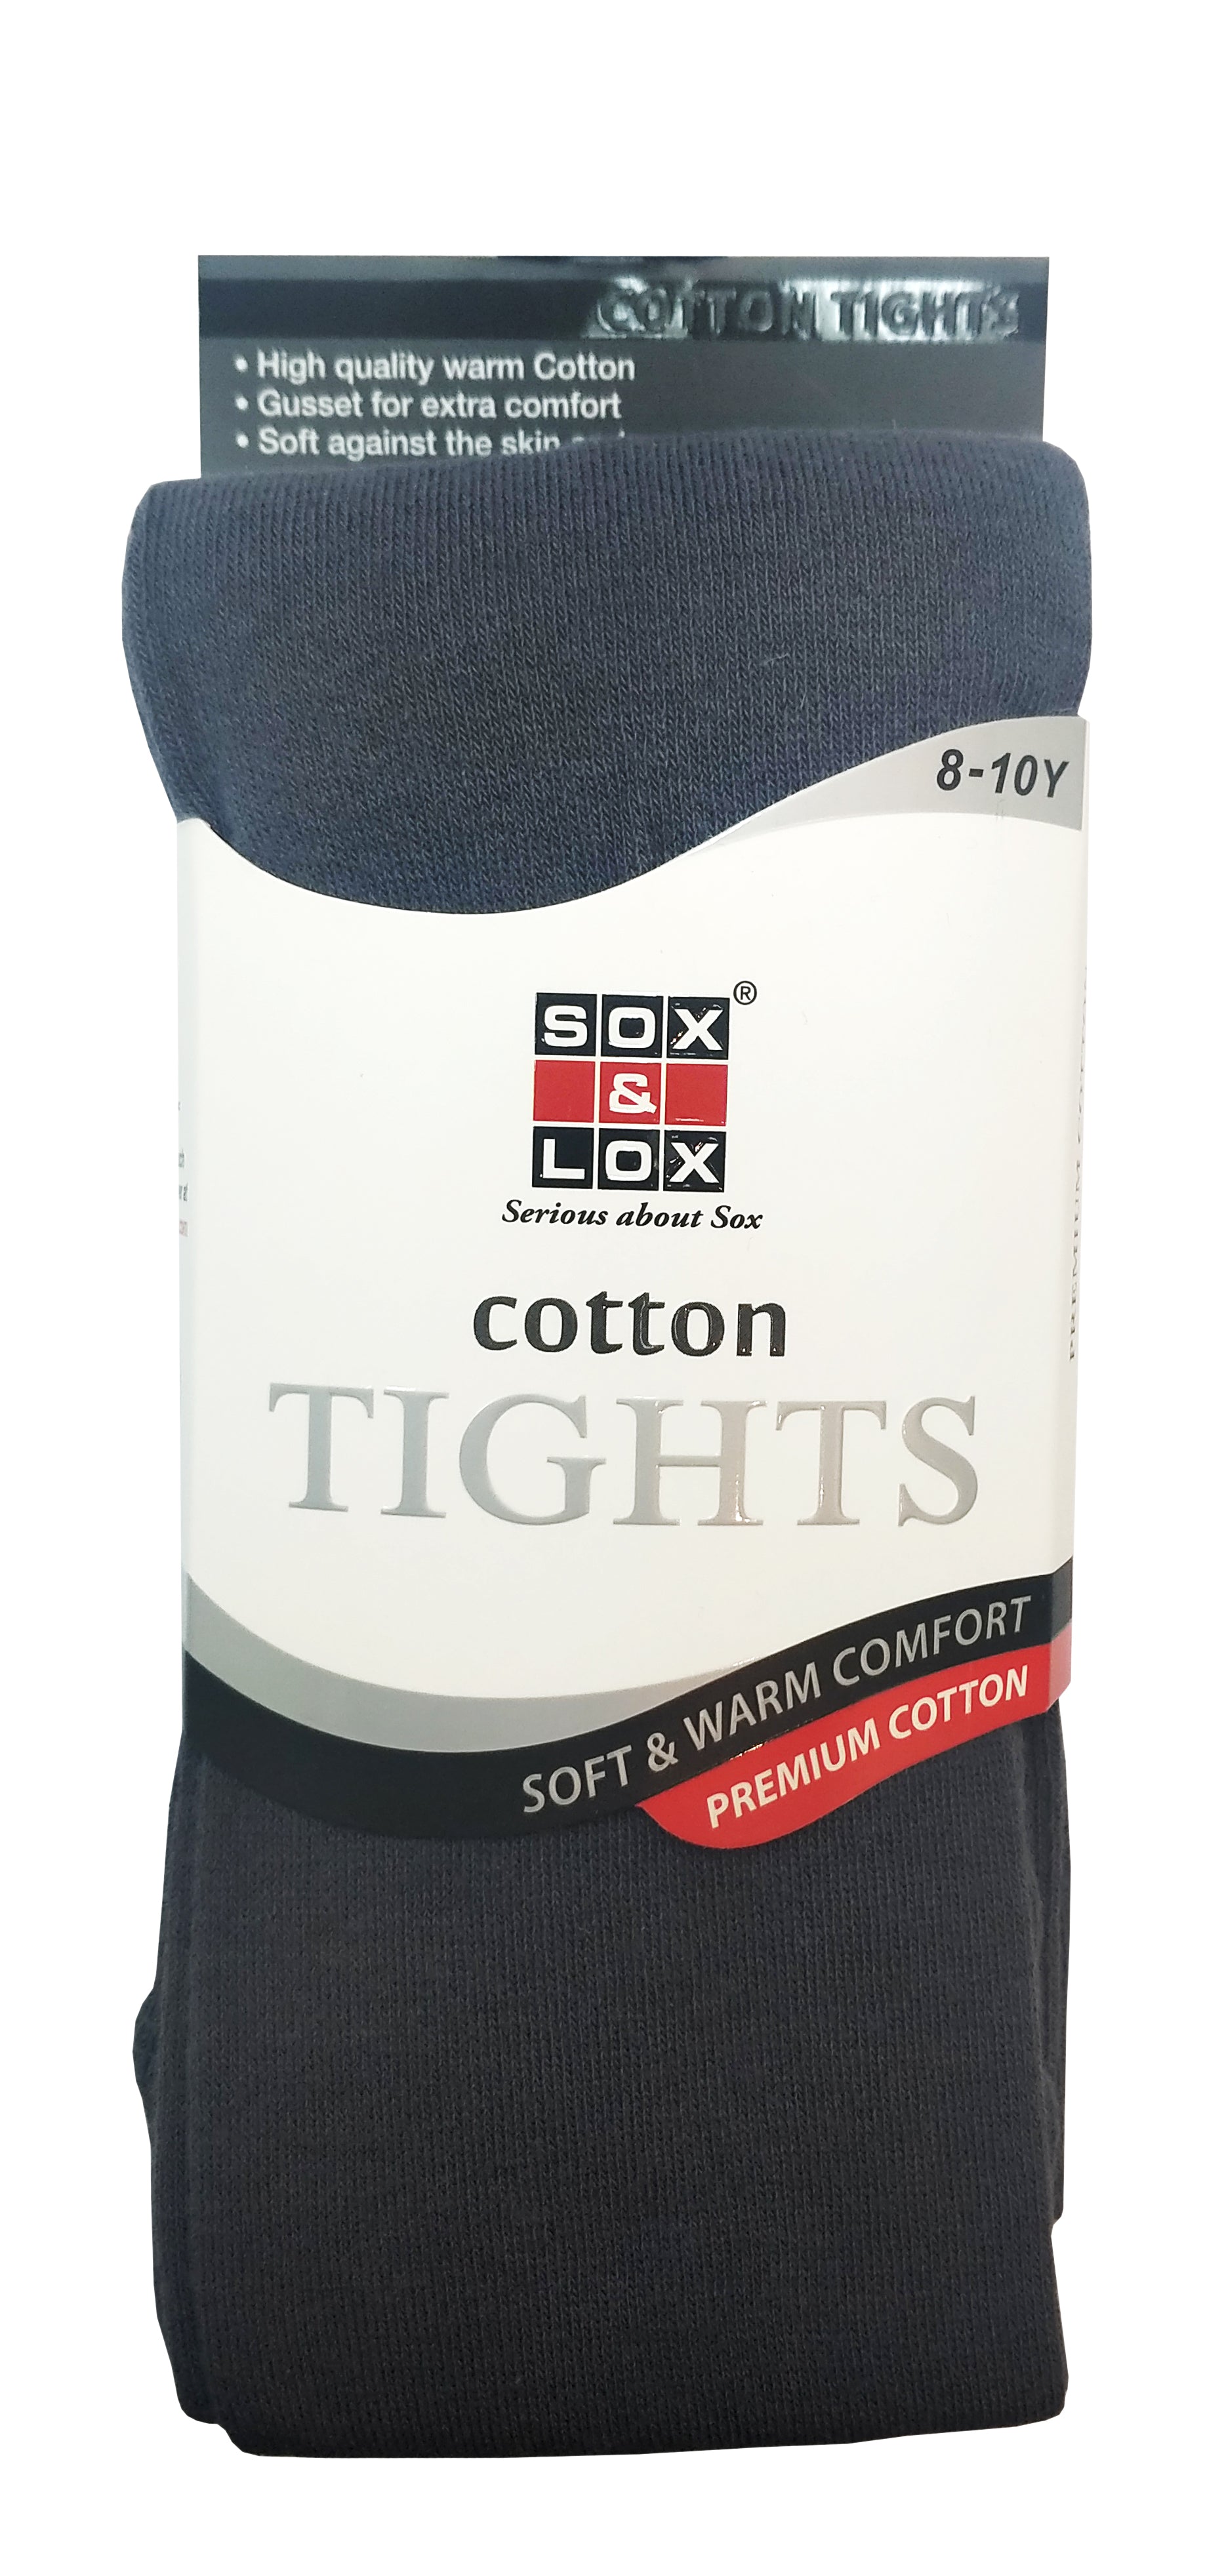 Children's Cotton Tights (8-10Y)